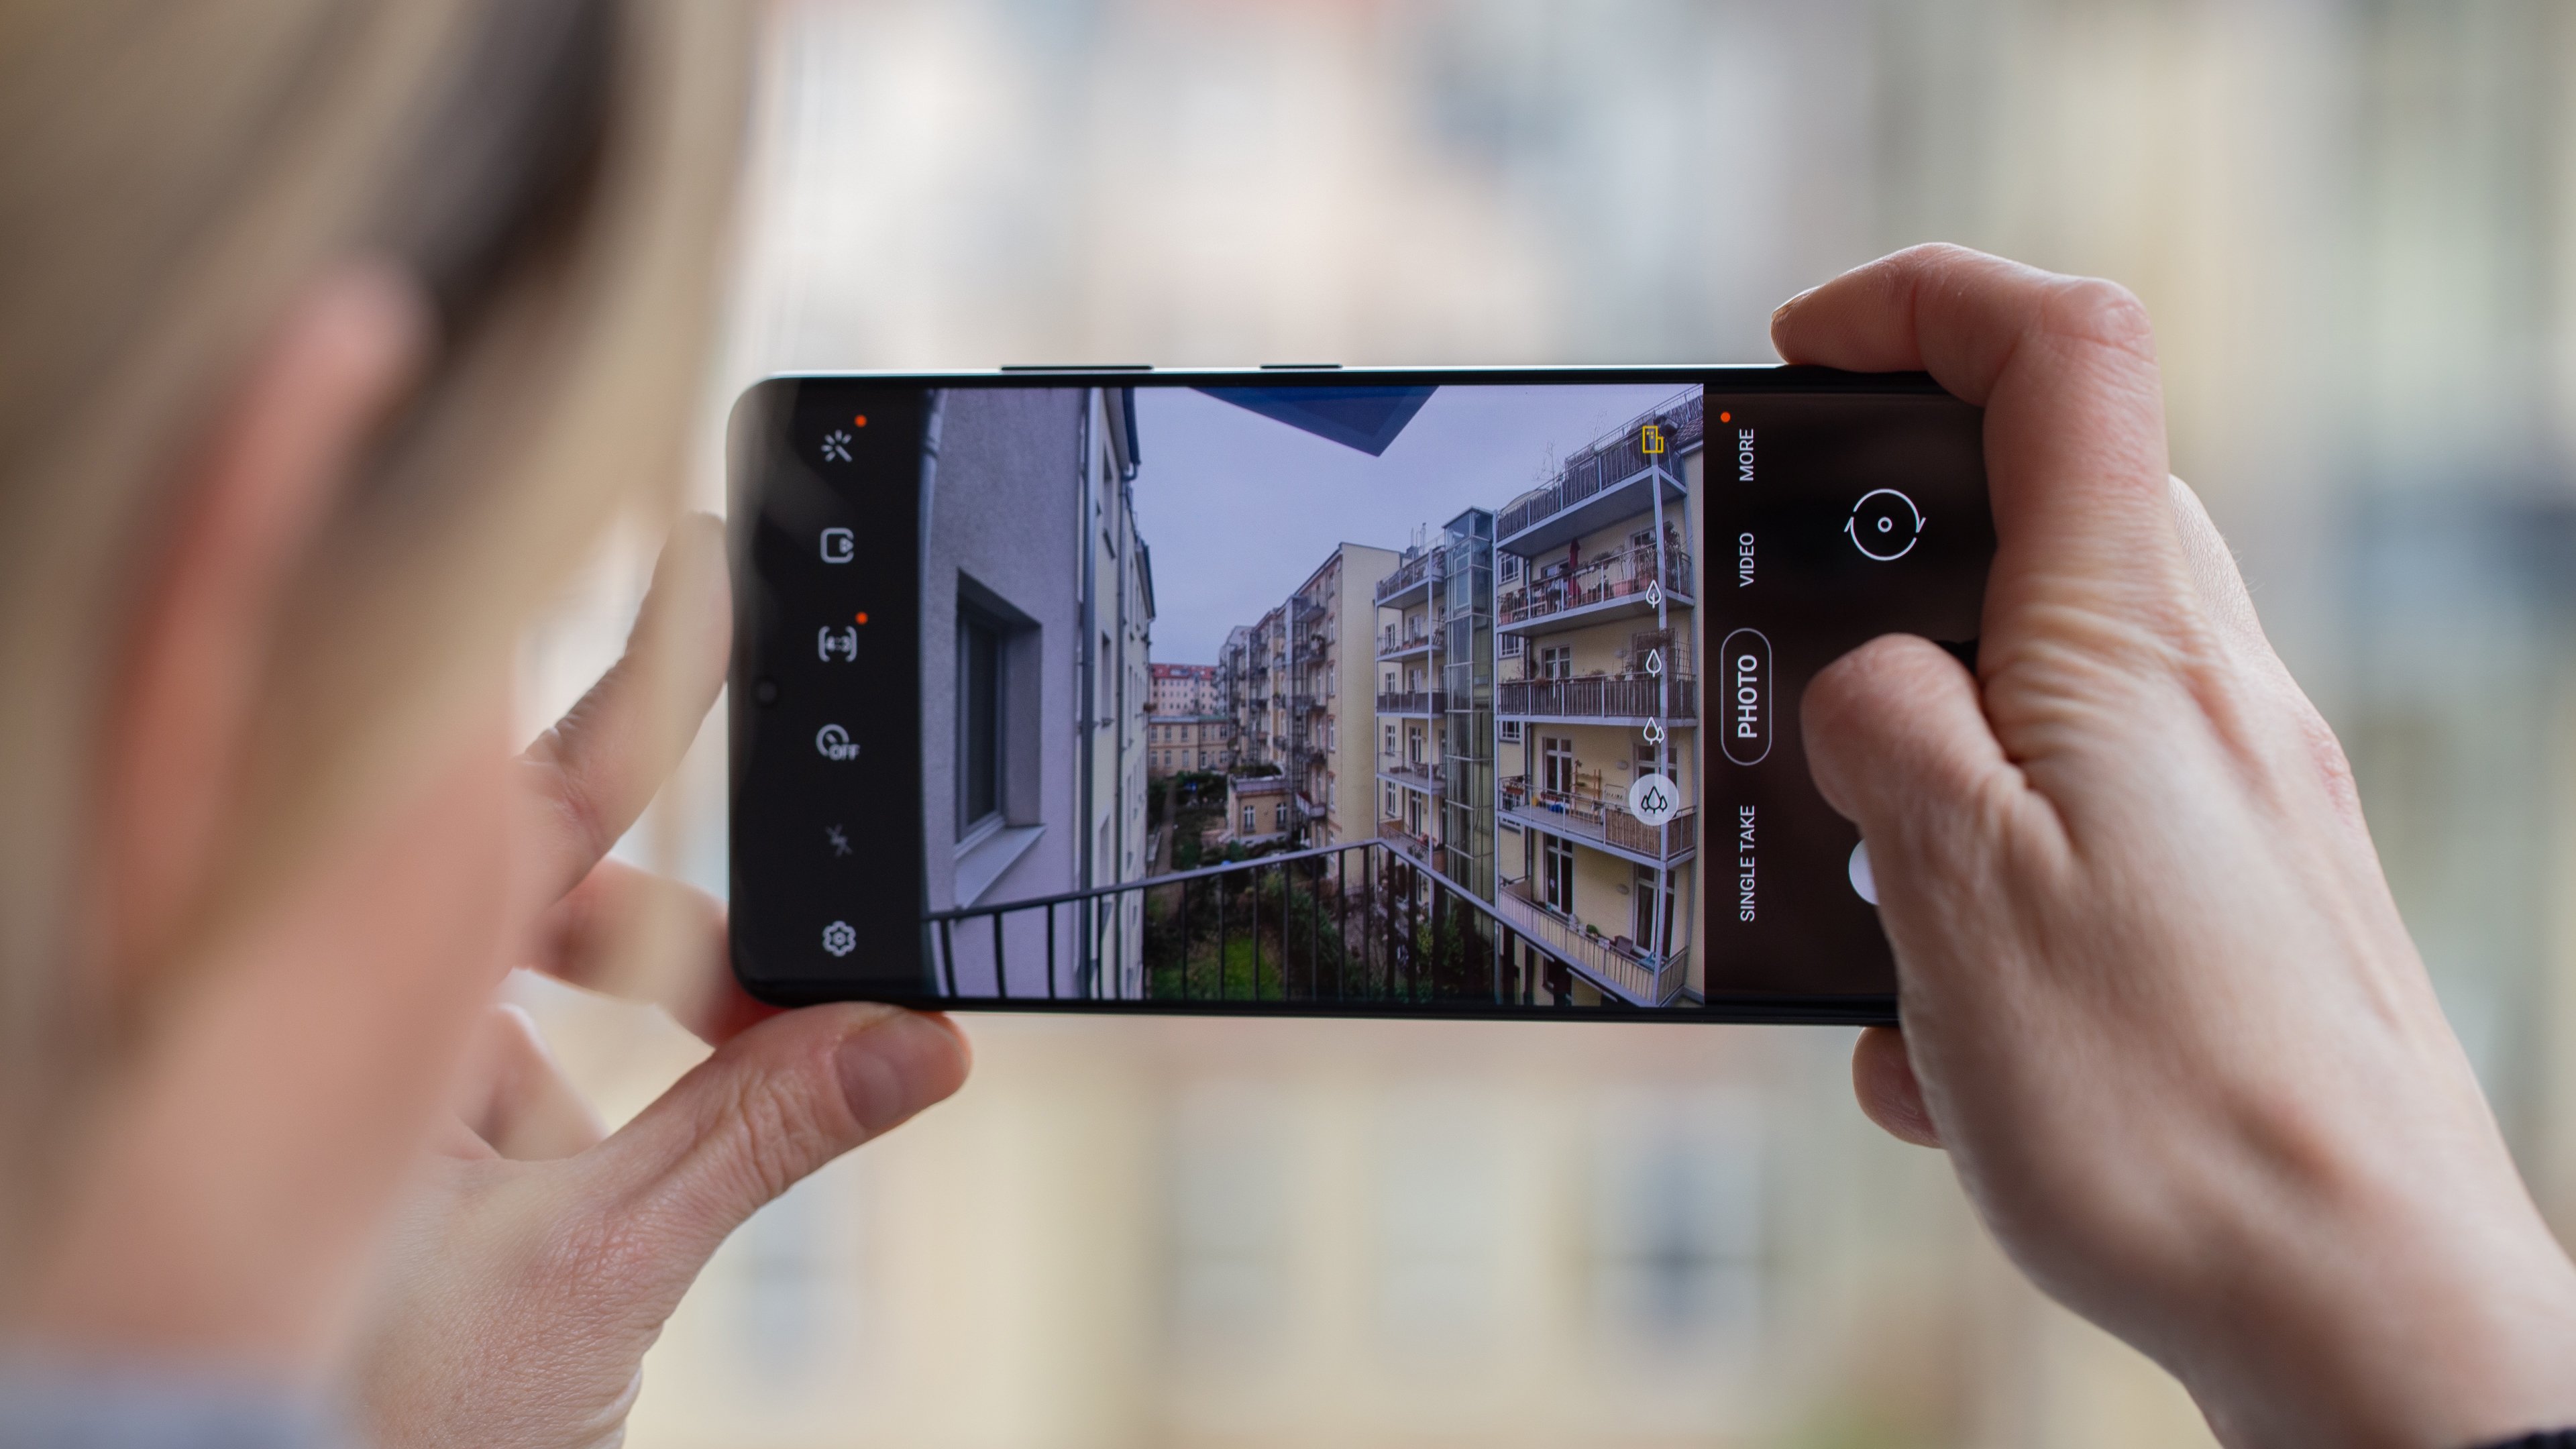 Samsung Galaxy S21 với các tính năng camera mới đang làm mưa làm gió trên thị trường smartphone. Hãy xem hình ảnh liên quan để khám phá những tính năng đó, bao gồm zoom ống kính siêu rộng, chế độ chụp ảnh tốc độ cao và nhiều tính năng độc đáo khác. Với Samsung Galaxy S21, bạn sẽ có những trải nghiệm chụp ảnh chất lượng tuyệt vời.